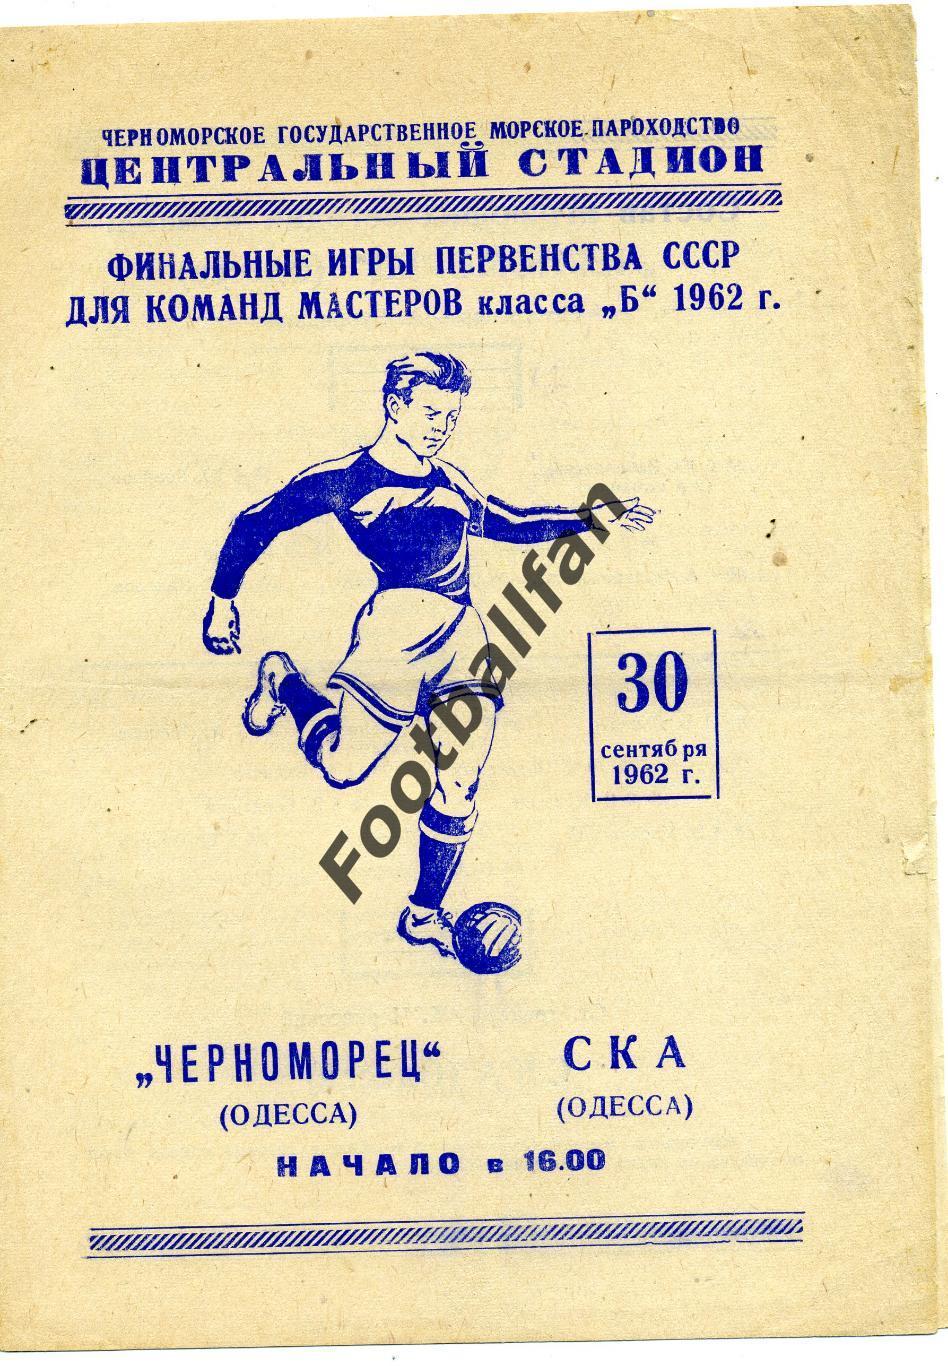 Черноморец Одесса - СКА Одесса 30.09.1962 2-й матч за звание Чемпиона Украины